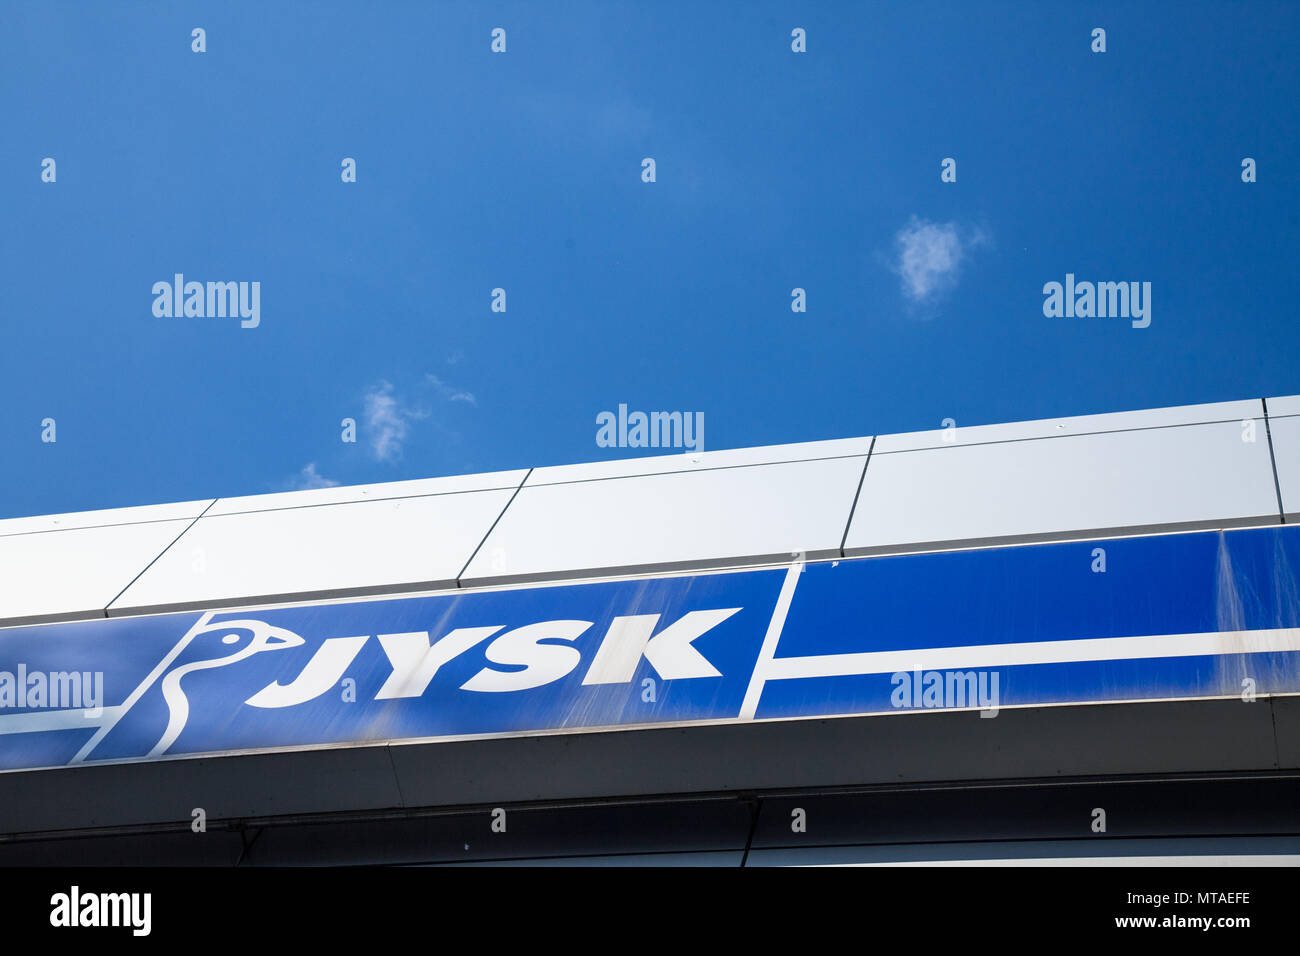 INDJIJA, Serbien - 20. MAI 2018: jysk-Logo auf Ihren lokalen Shop in Indjija. Jysk ist ein dänischer Einzelhandelskette, Verkauf von Haushaltswaren Bild eines Jysk Si Stockfoto